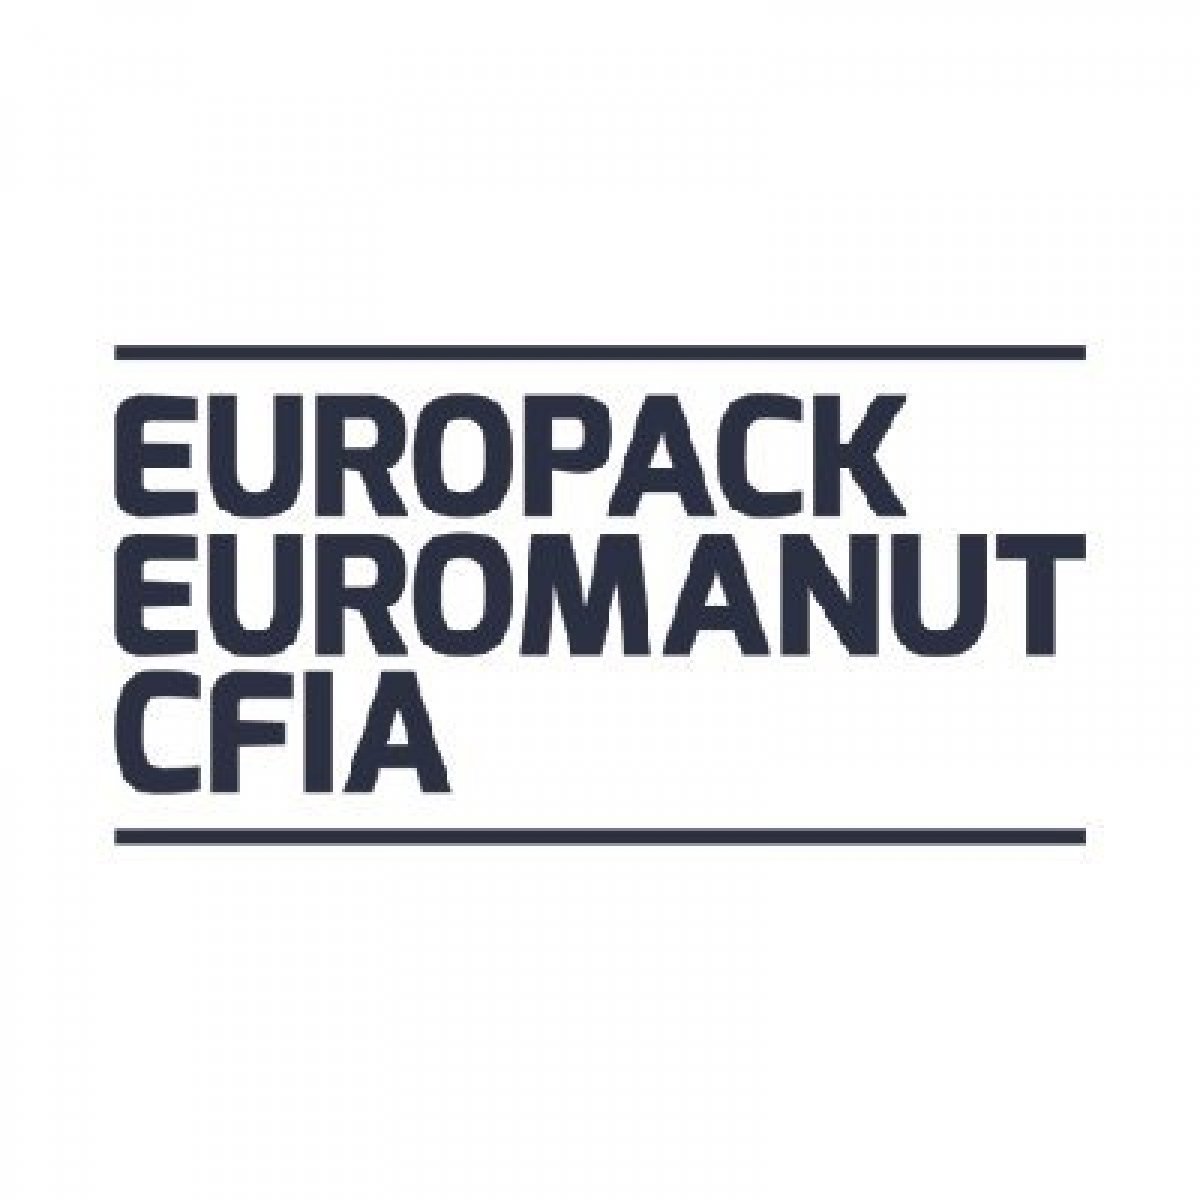 Europack Euromanut CFIA - La mostra di manipolazione, imballaggio e processo